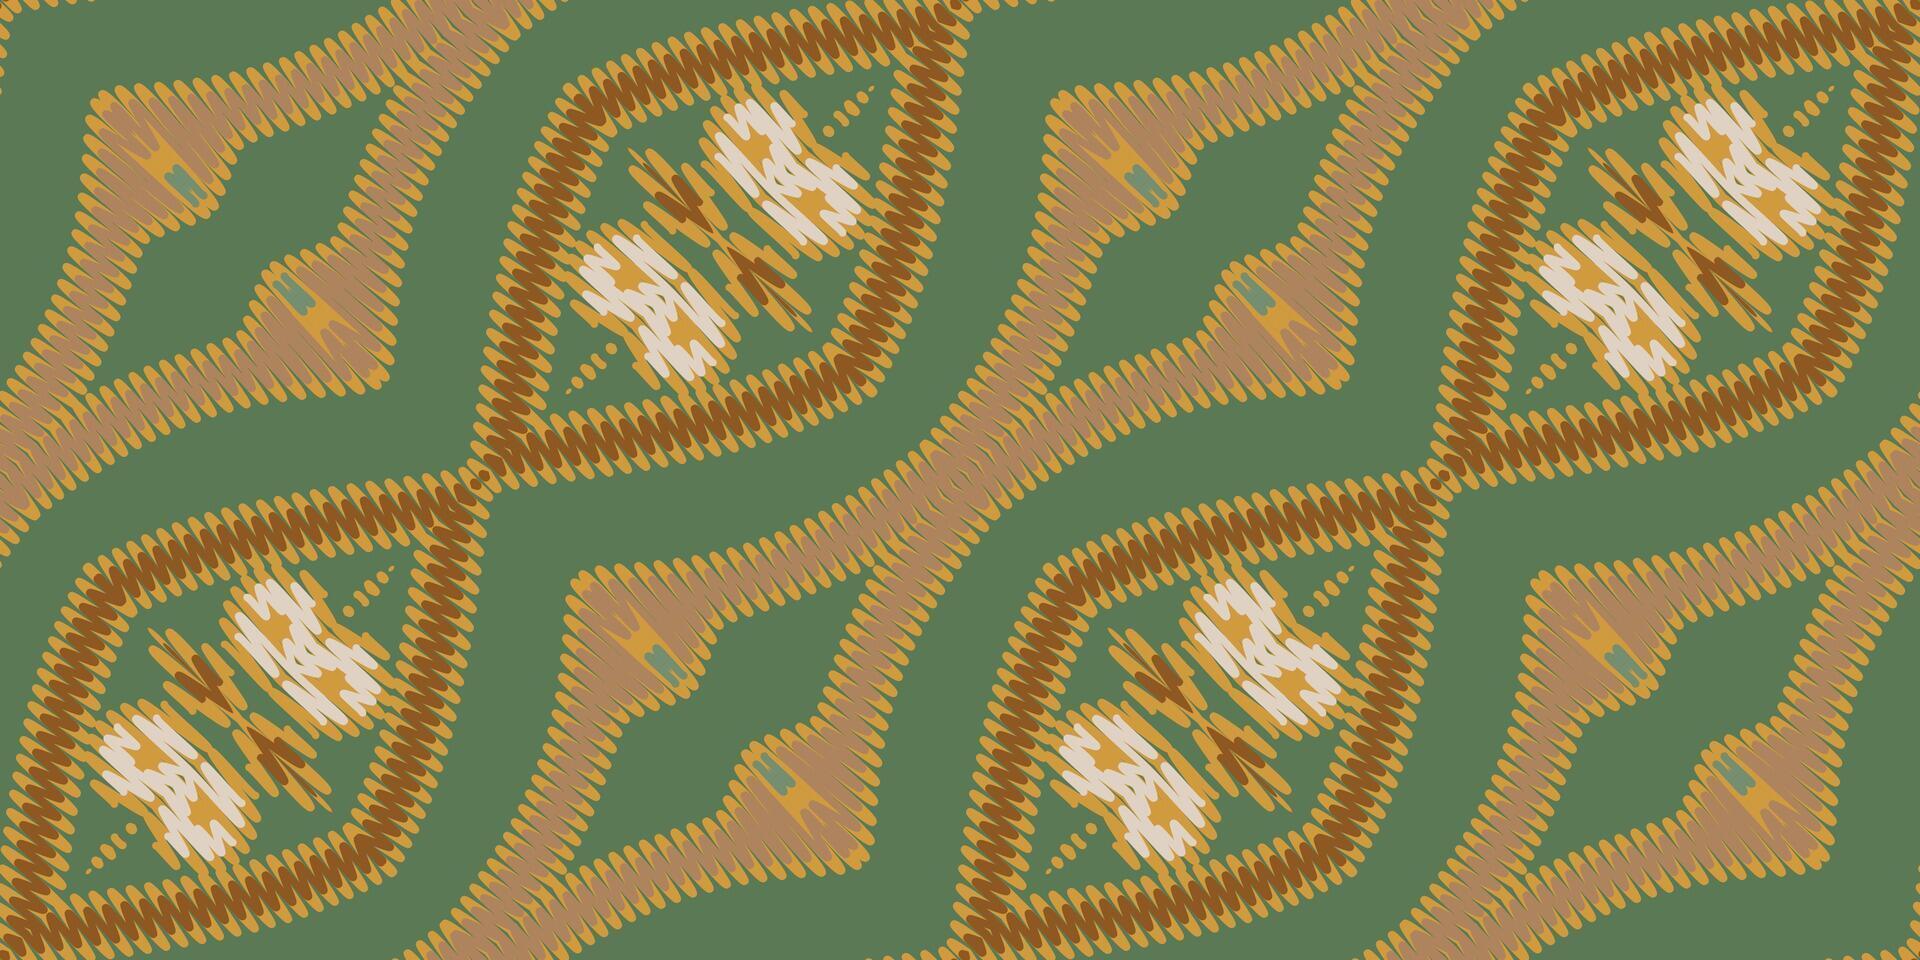 ikat blommig paisley broderi på vit bakgrund.ikat etnisk orientalisk mönster traditionell.aztec stil abstrakt vektor illustration.design för textur, tyg, kläder, inslagning, dekoration, halsduk, matta